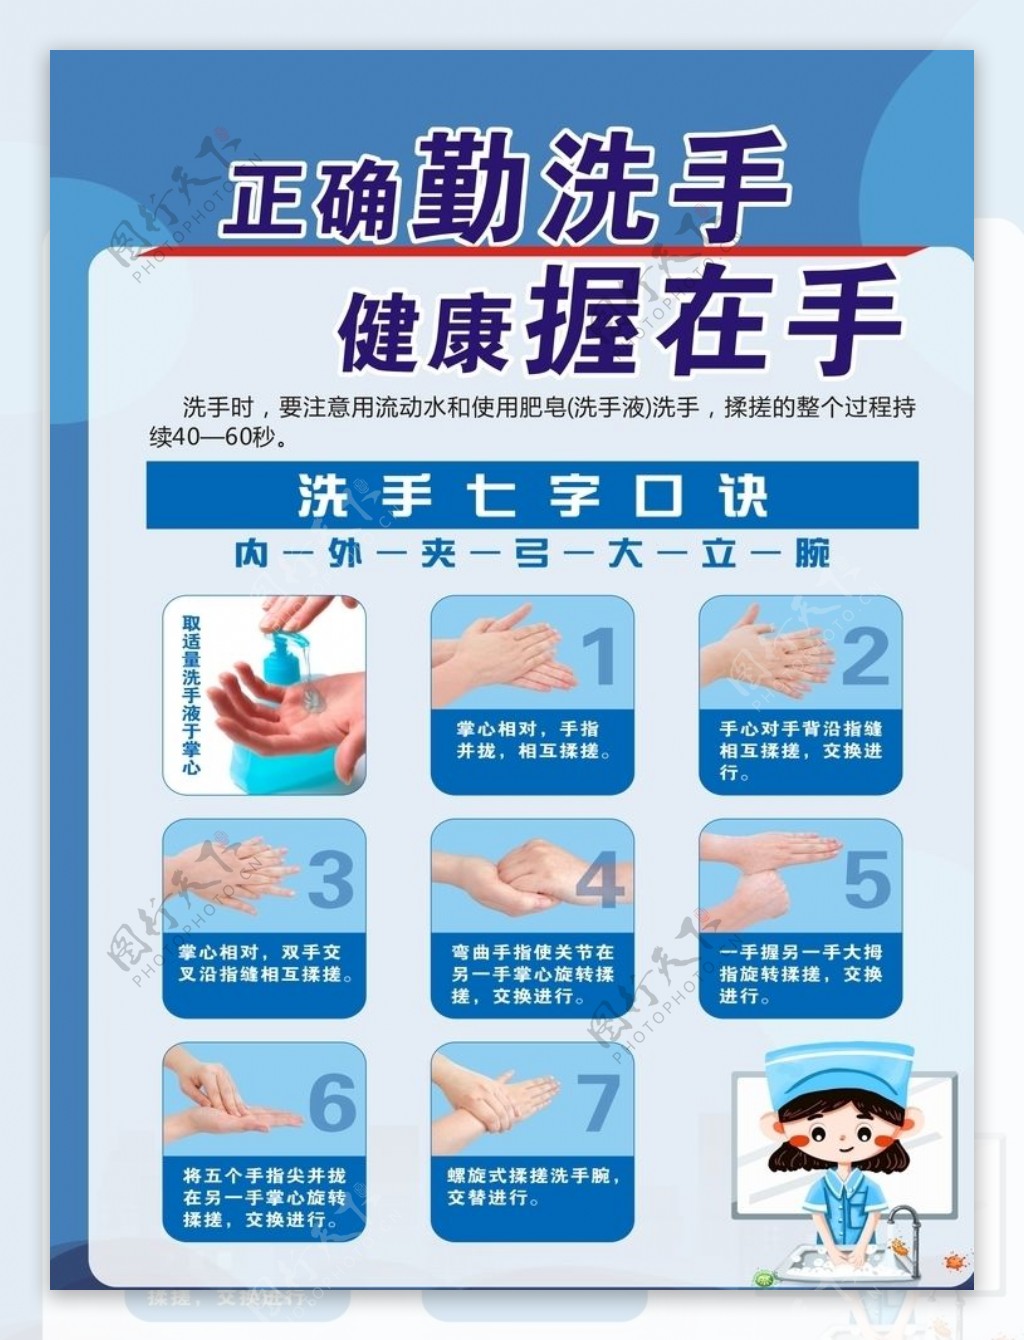 洗手七步法传染病预防传图片